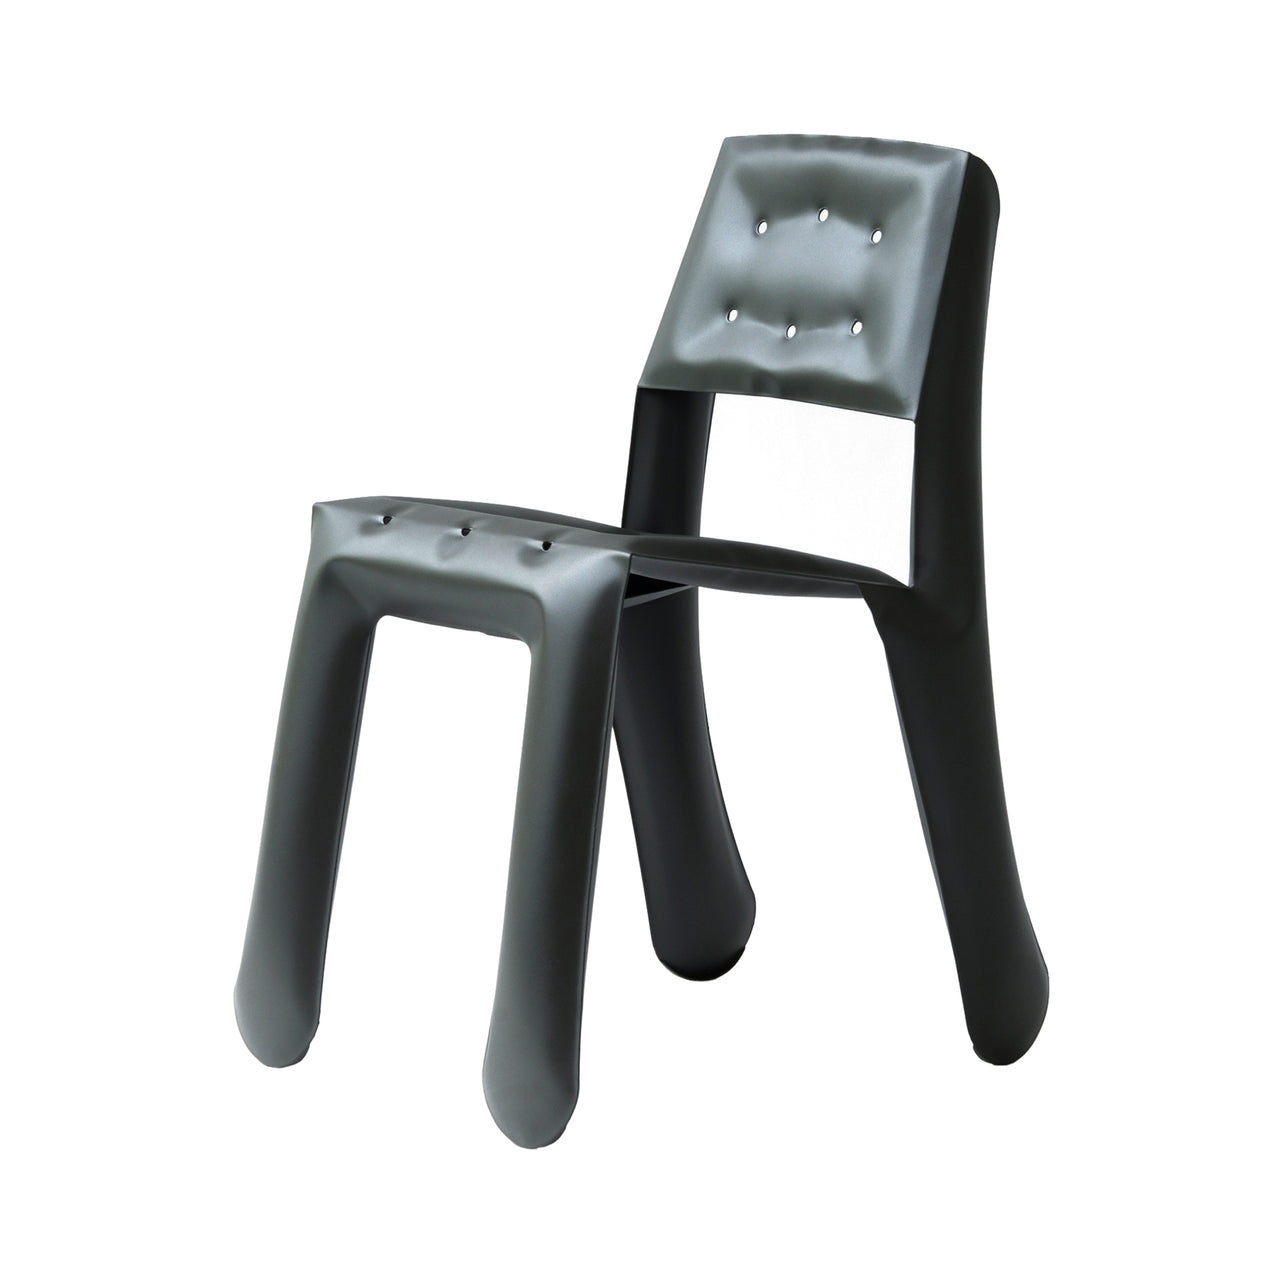 Chippensteel 0.5 Chair: Umbra Grey Carbon Steel